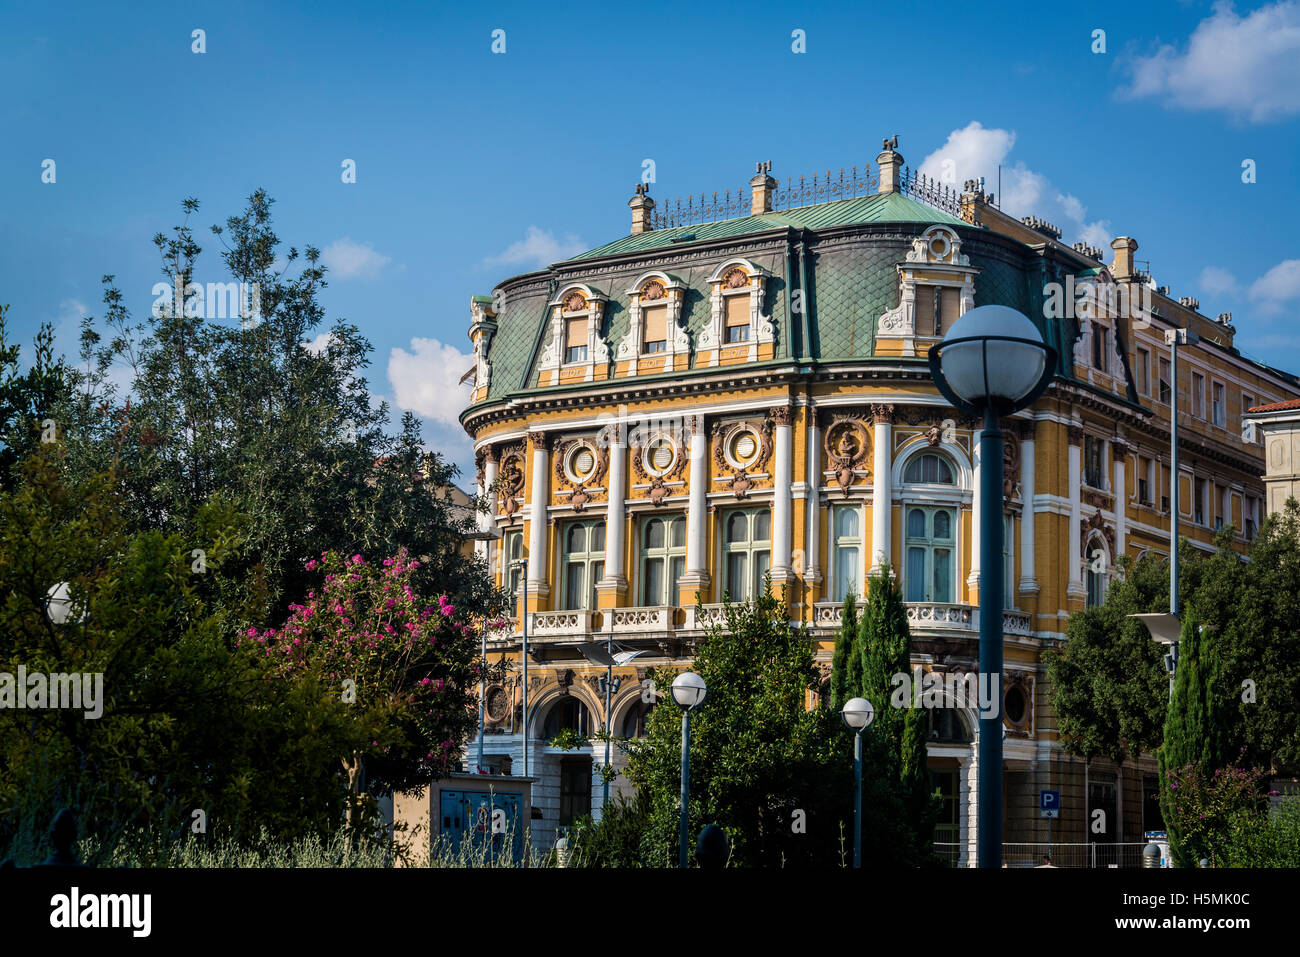 Palast Modello, Gebäude aus dem 19. Jahrhundert reich an dekorativen Elementen im Stil der späten Renaissance und des Barock, Rijeka, Kroatien Stockfoto